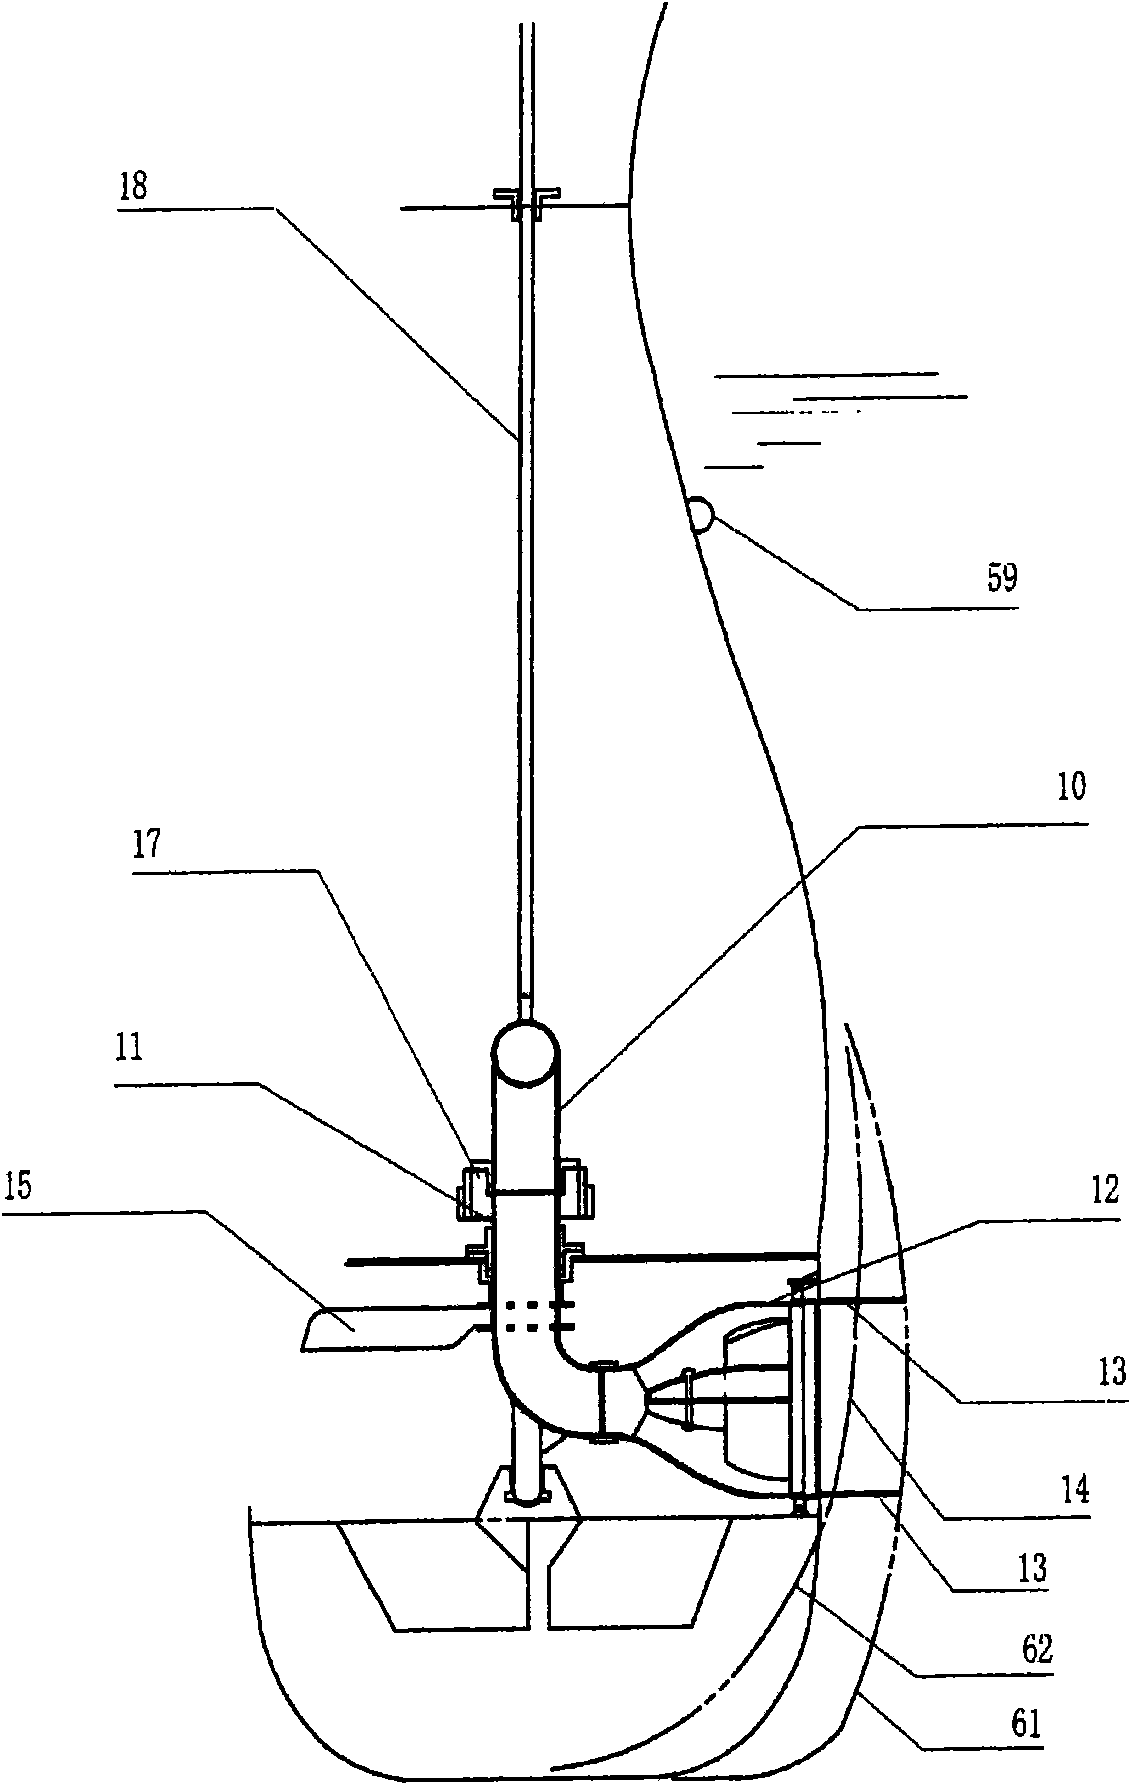 Thrust generating apparatus